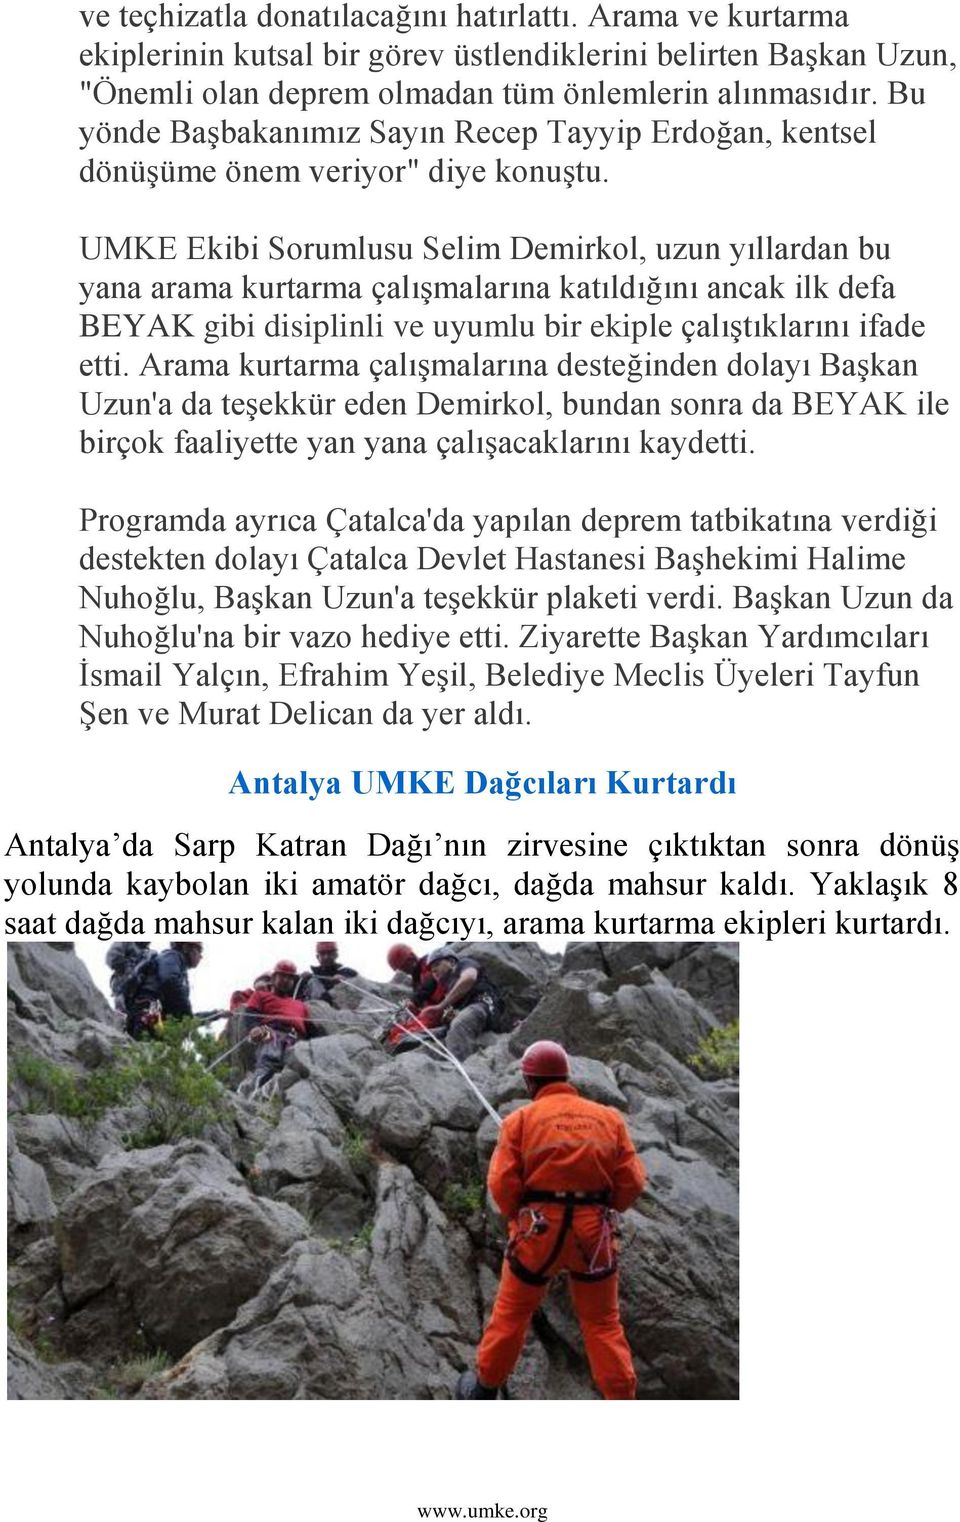 UMKE Ekibi Sorumlusu Selim Demirkol, uzun yıllardan bu yana arama kurtarma çalıģmalarına katıldığını ancak ilk defa BEYAK gibi disiplinli ve uyumlu bir ekiple çalıģtıklarını ifade etti.